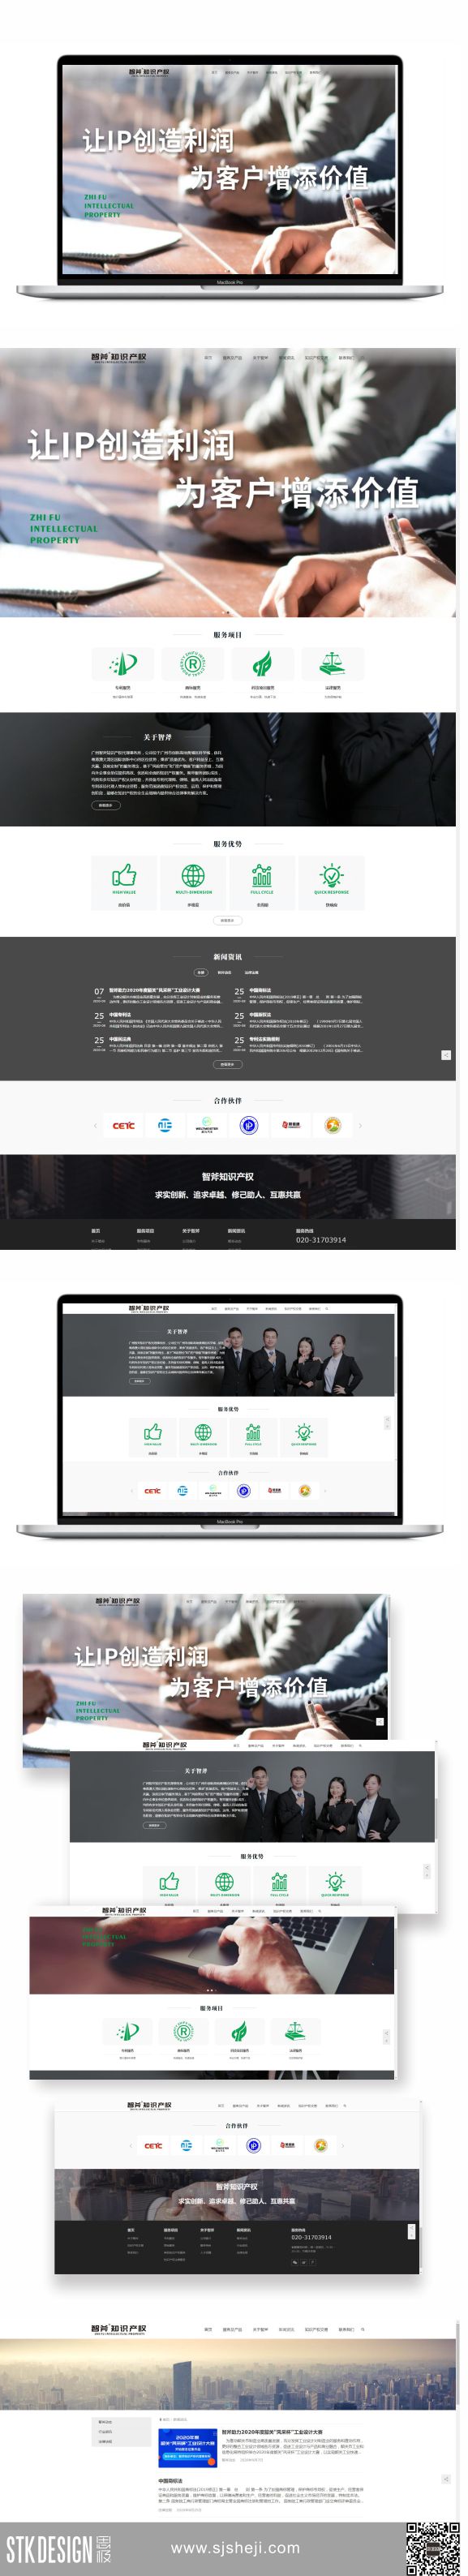 广州智斧知识产权网页设计